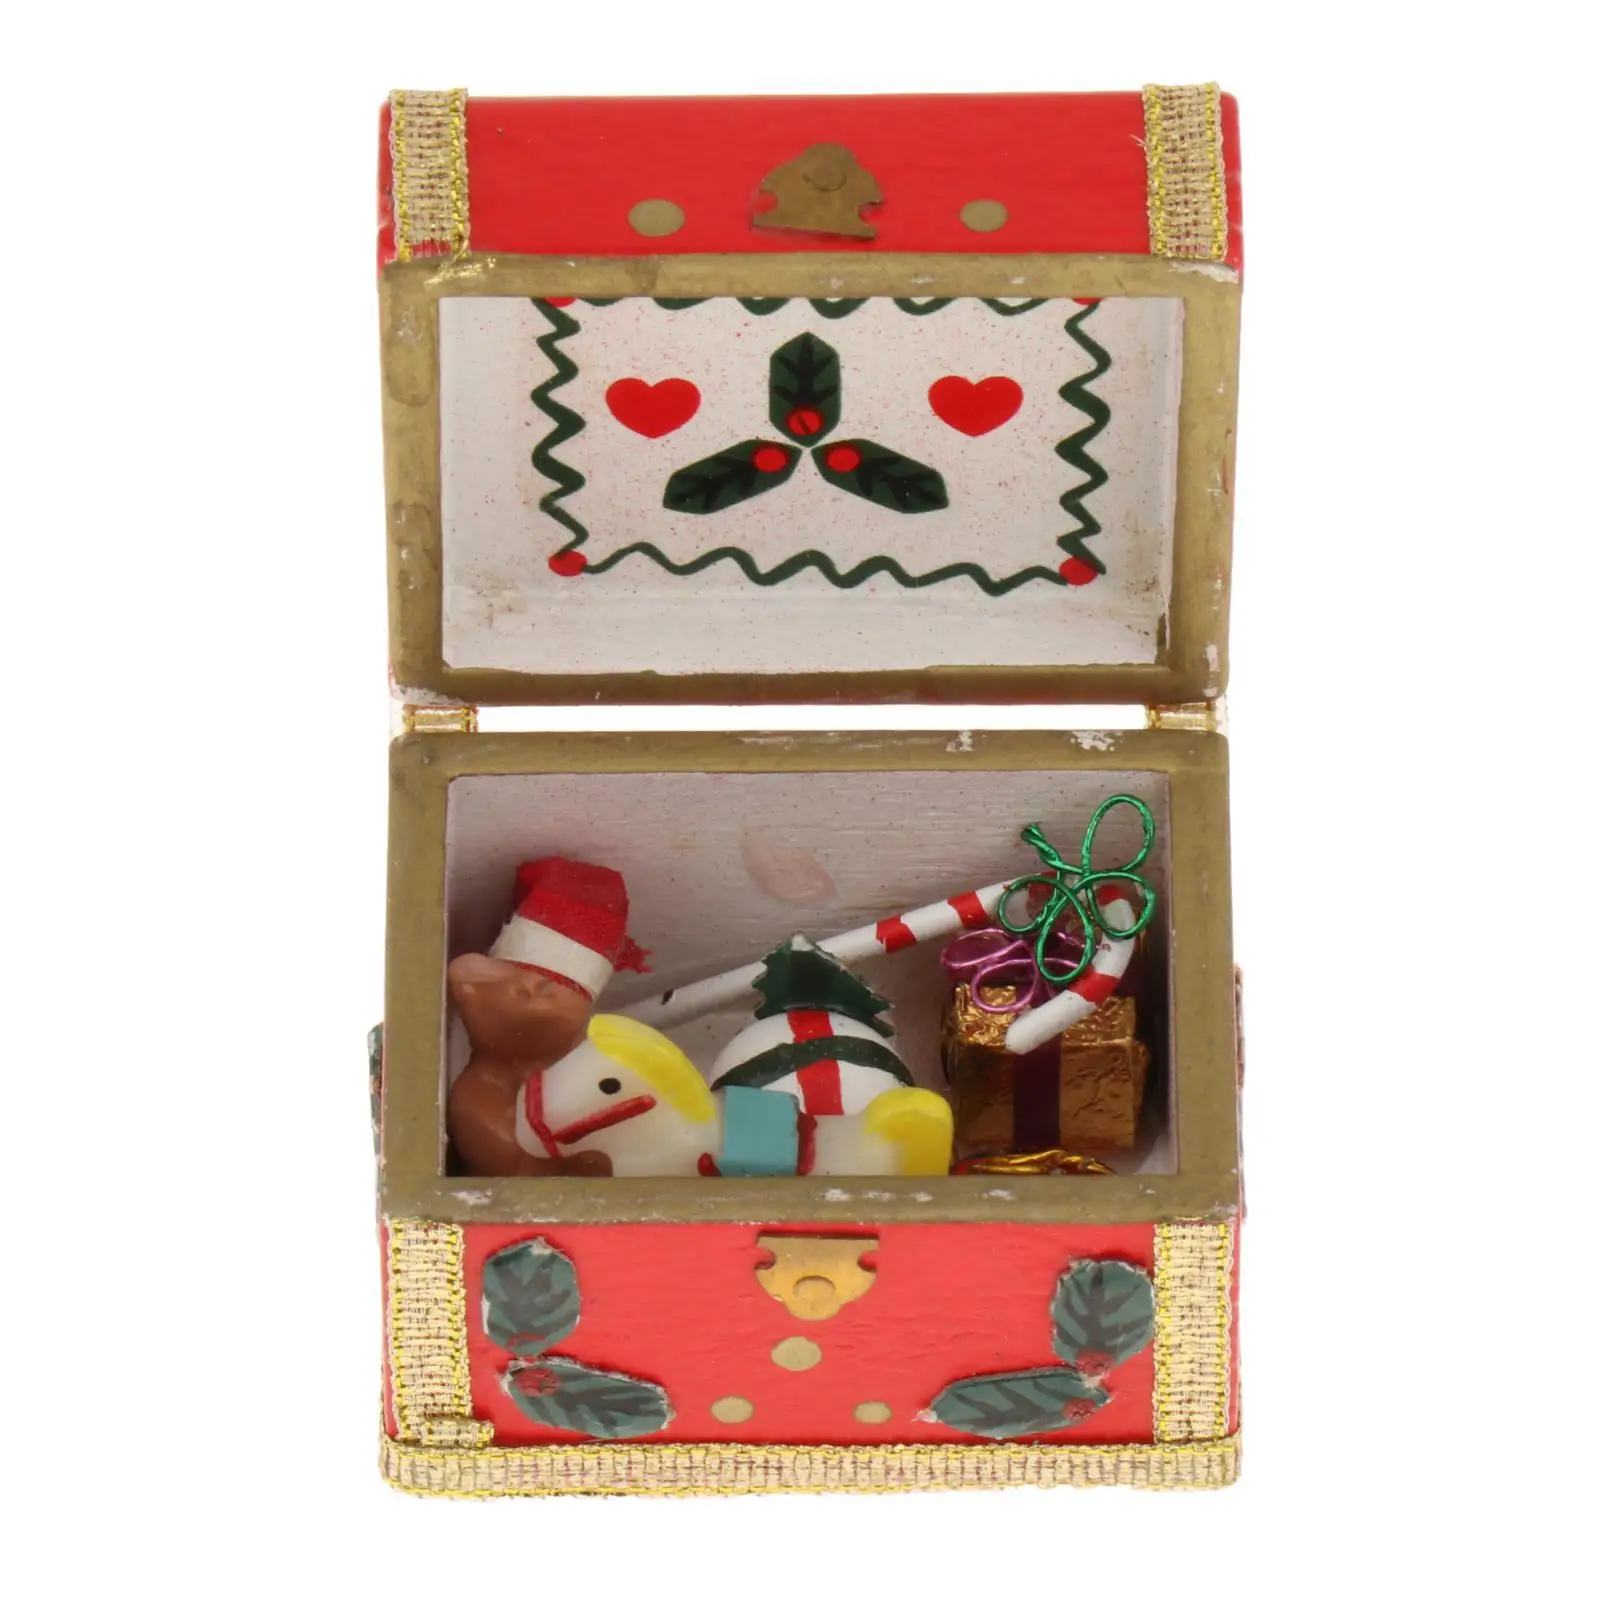 Christmas 1:12 Scale Miniature Treasure Chest Dollhouse Accessories for Scene Micro Landscape Photo Props Decoration